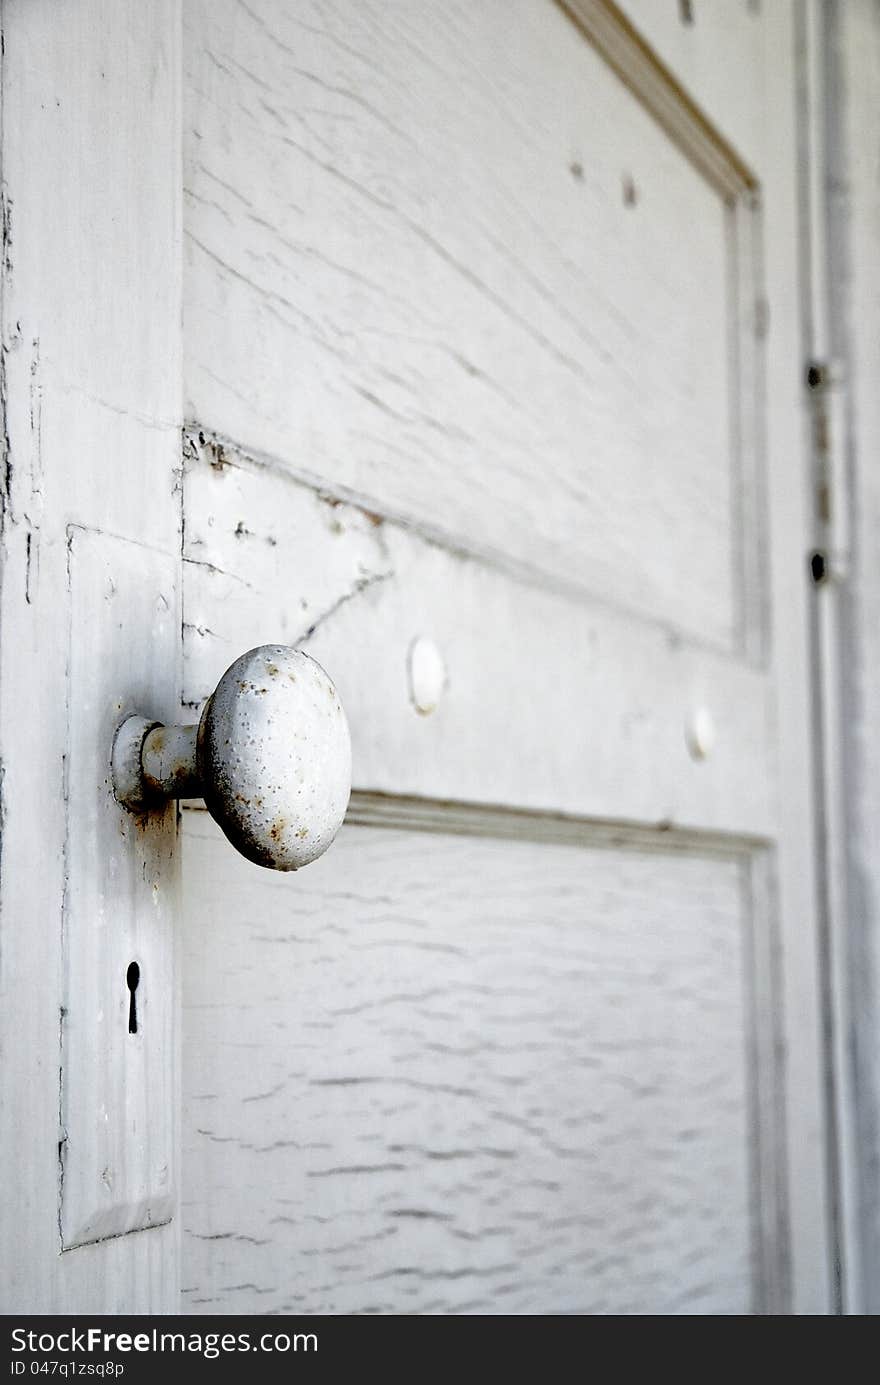 White door with a door knob close-up